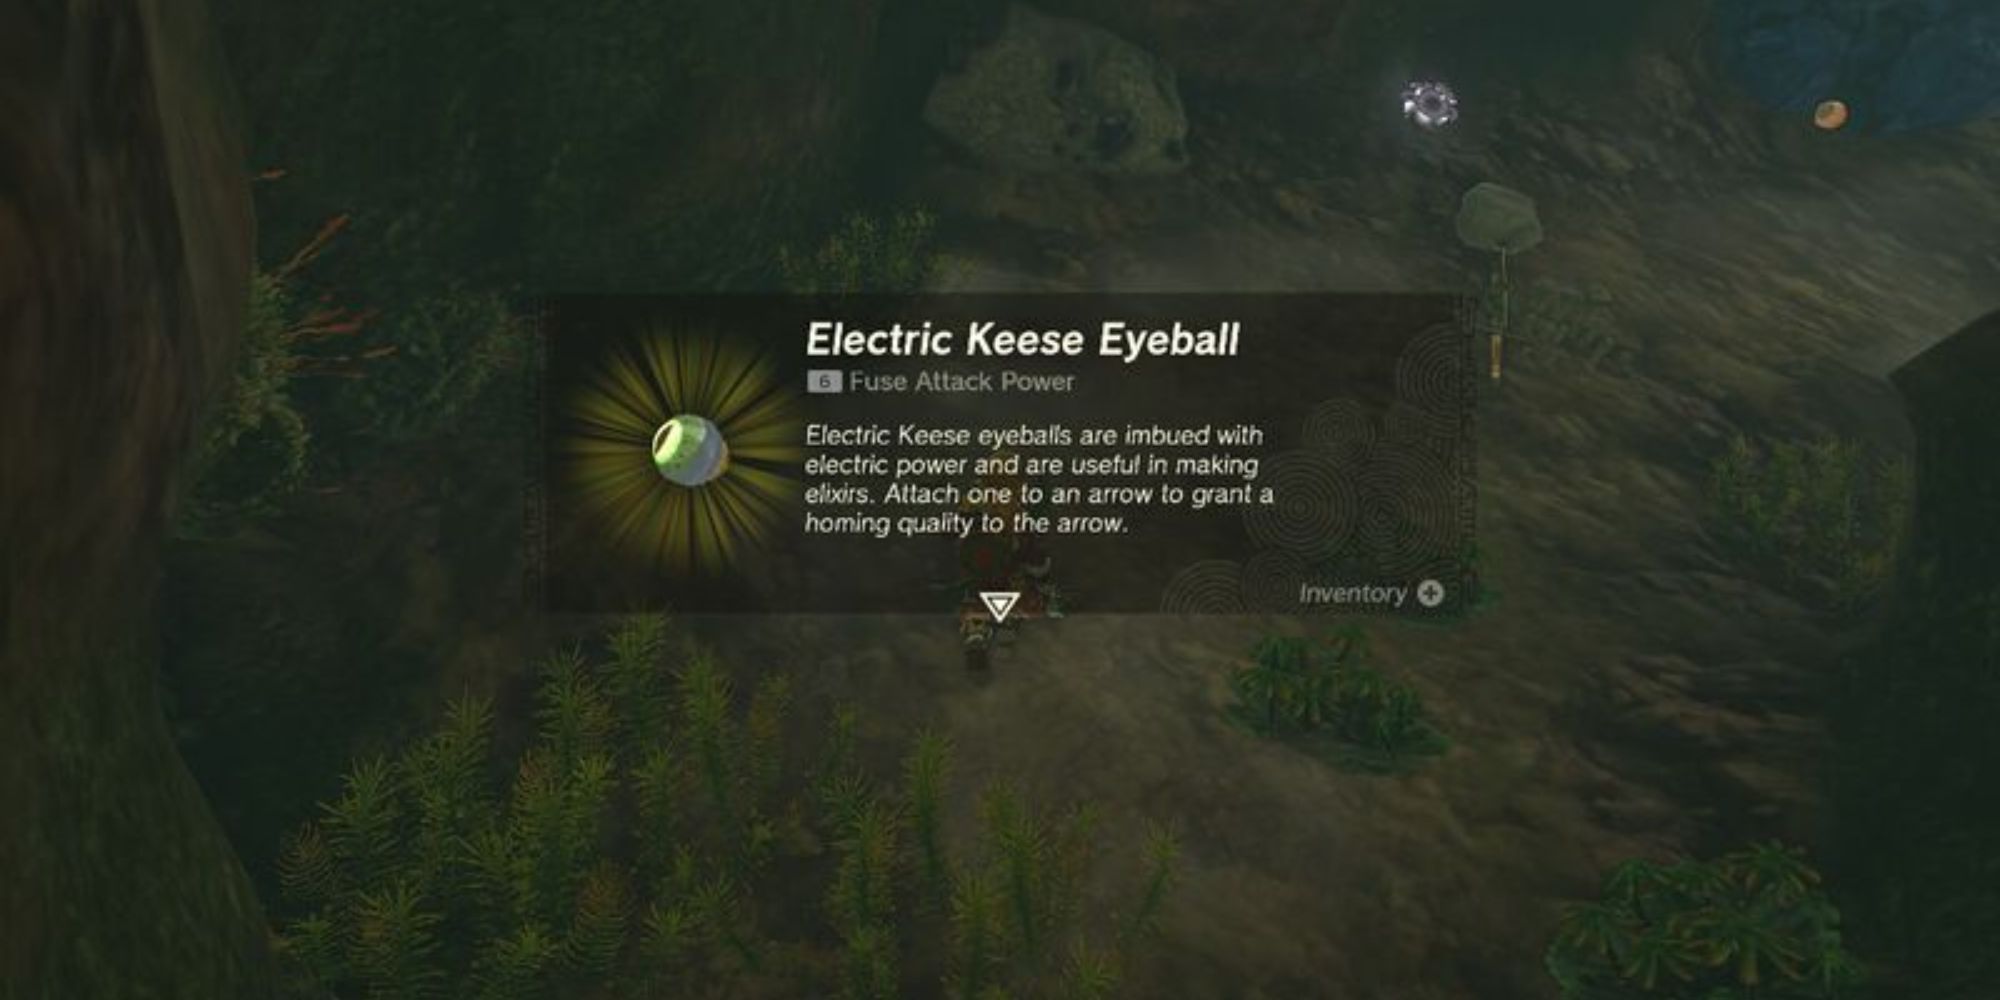 Electric Keese Eyeball